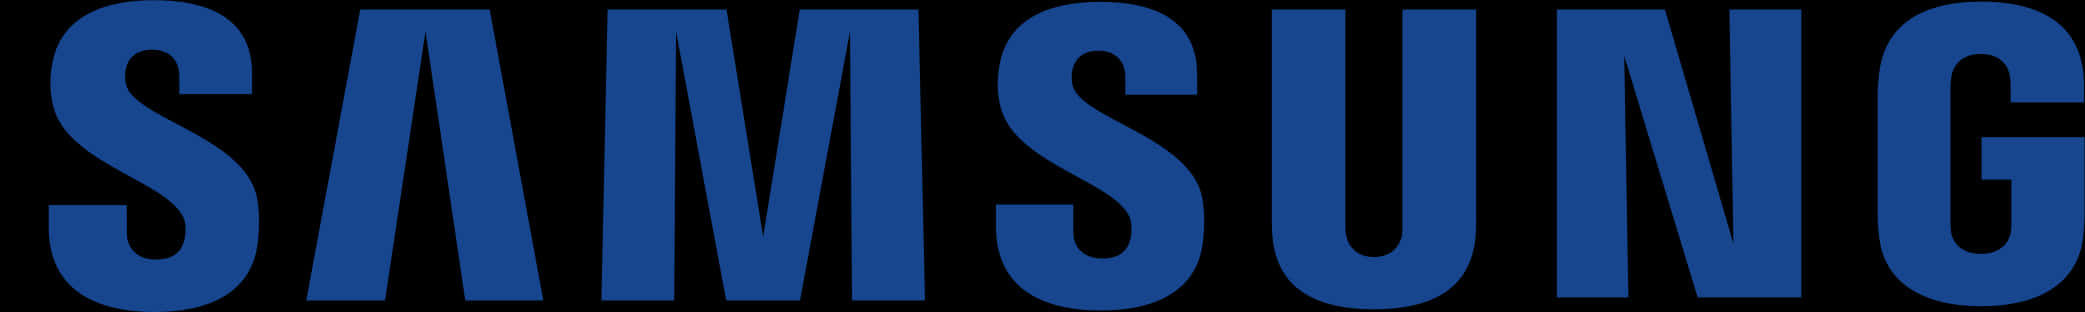 Samsung Logo Blue Background PNG image